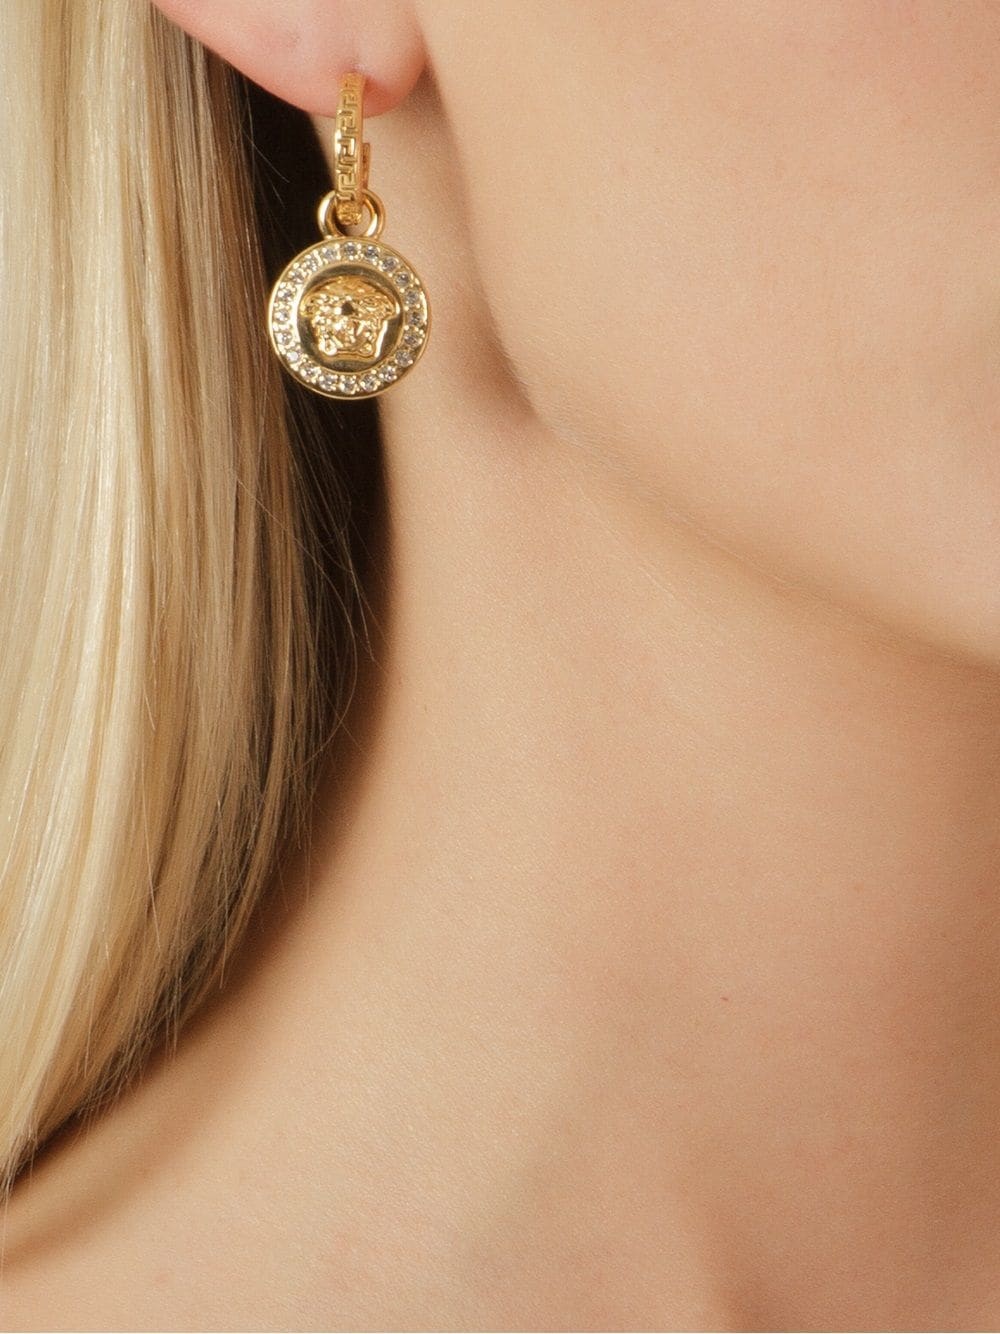 Crystal la medusa greca earrings - 2